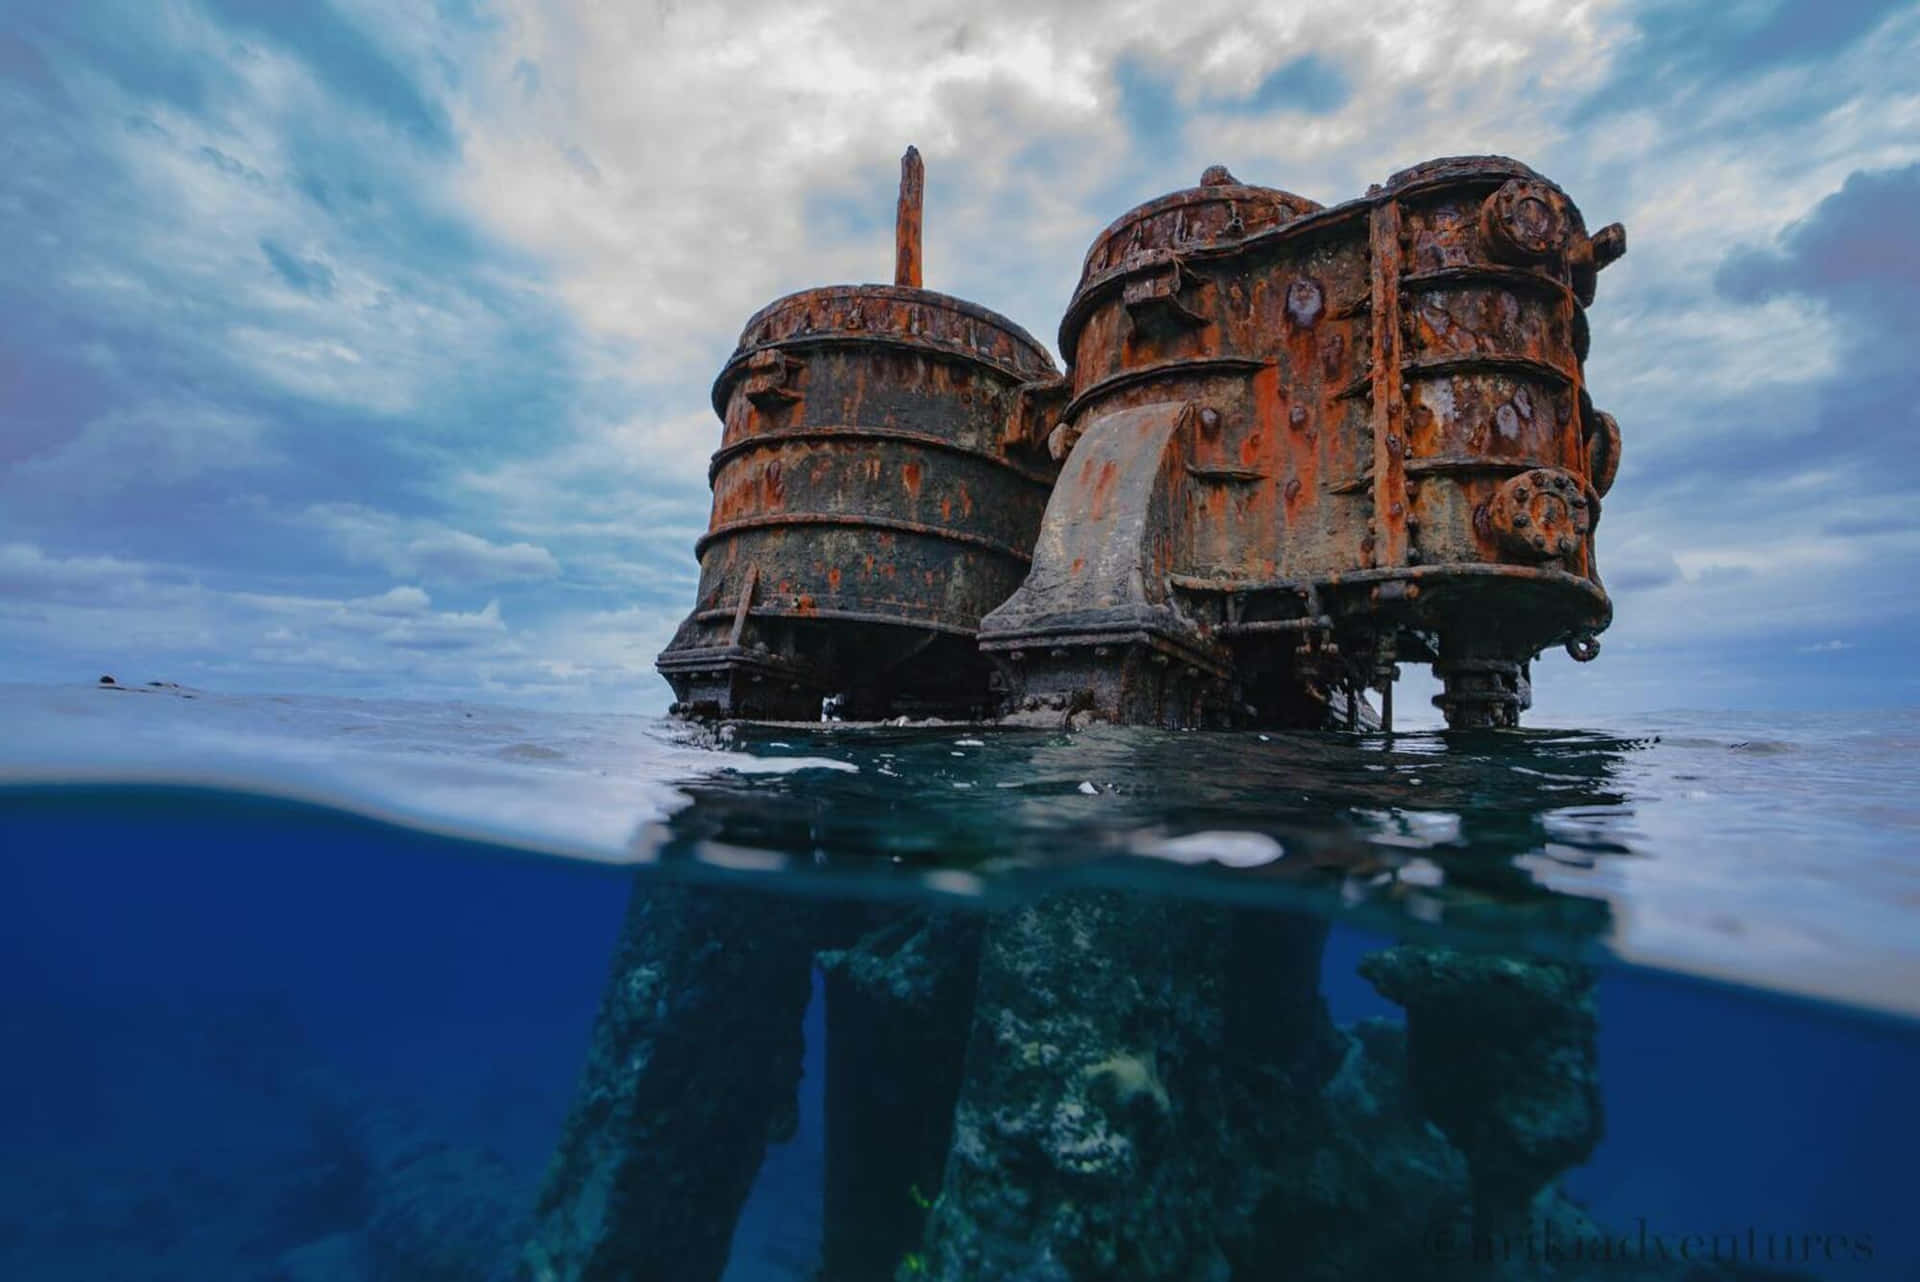 Mysterious Ocean's End: Forgotten Shipwreck Wallpaper